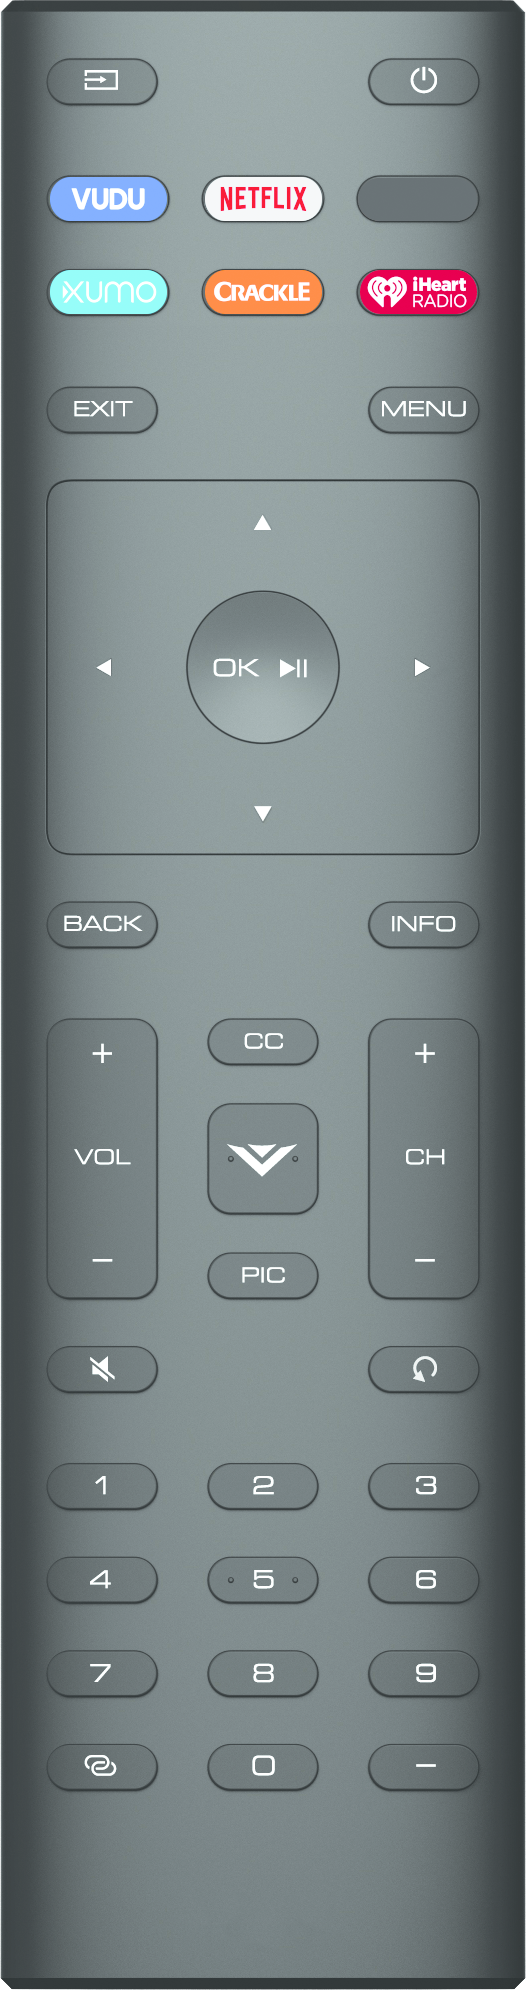 vizio-remote-button-layout